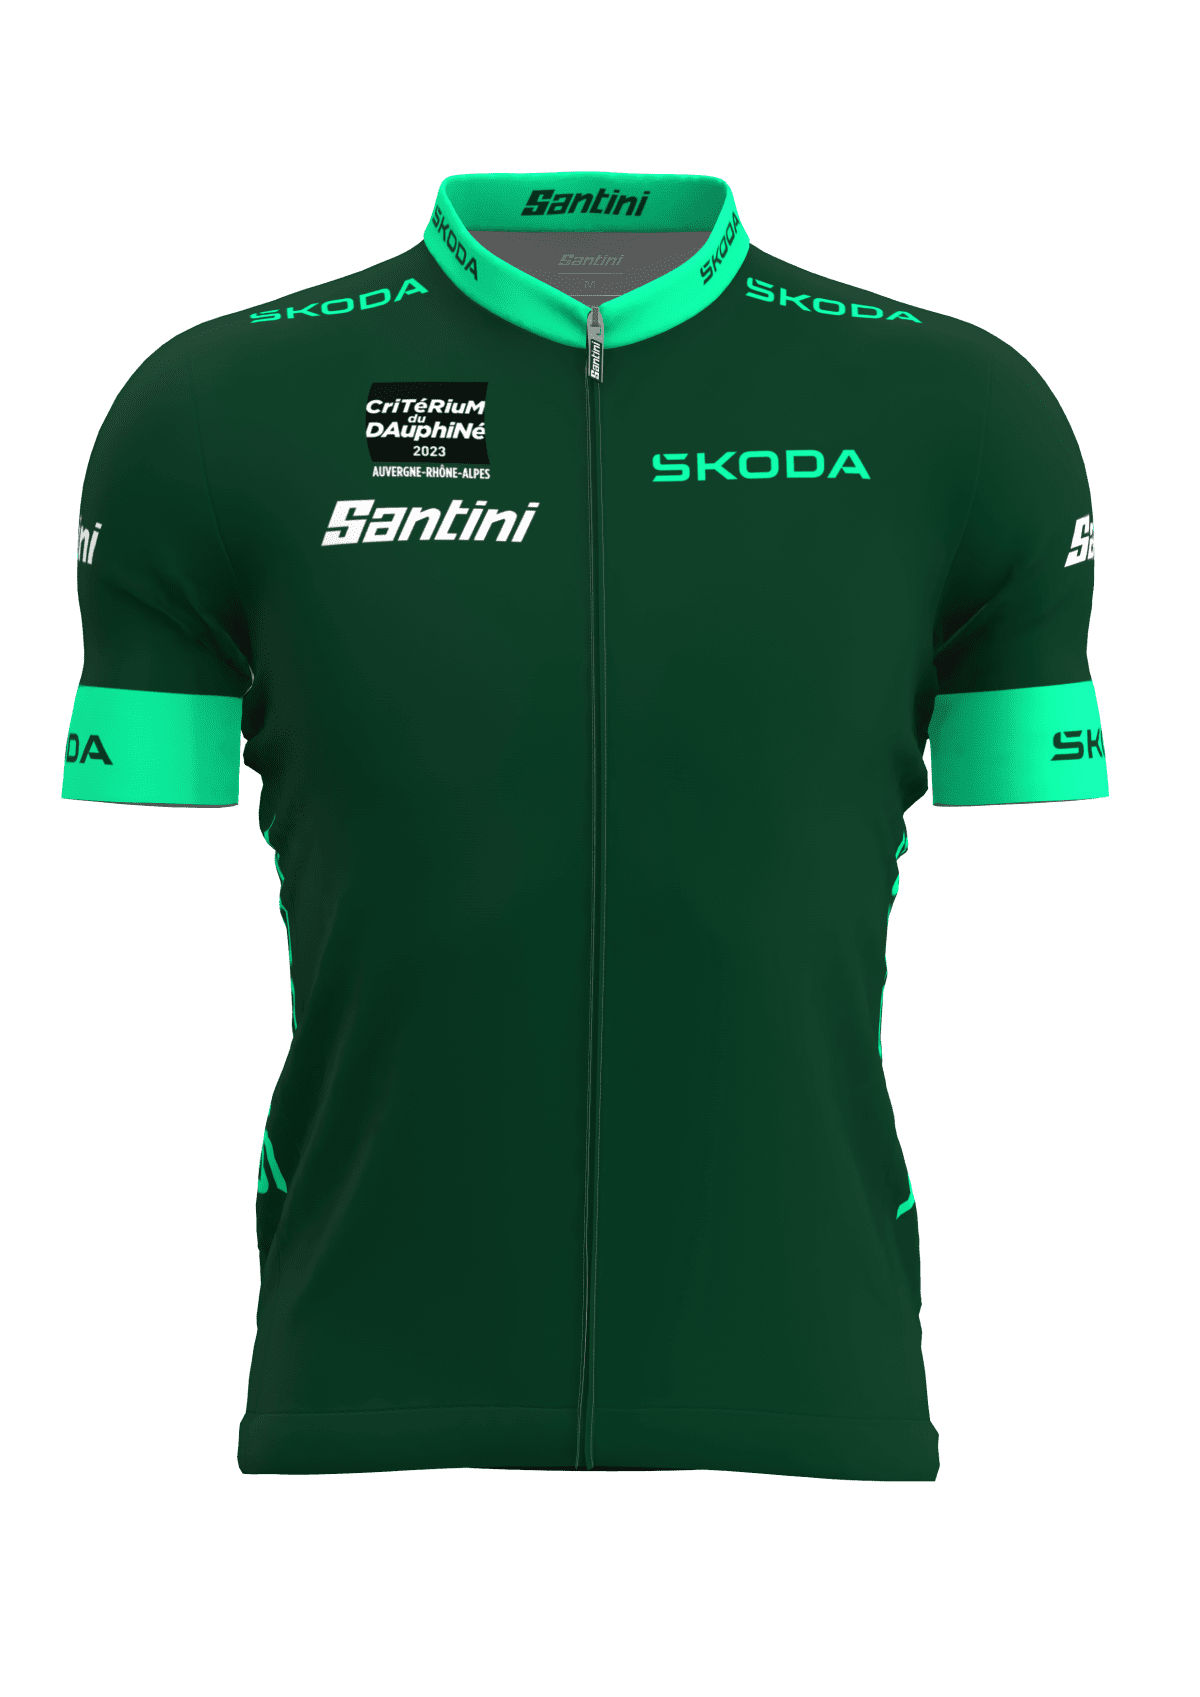 maillot vert criterium dauphine 2023